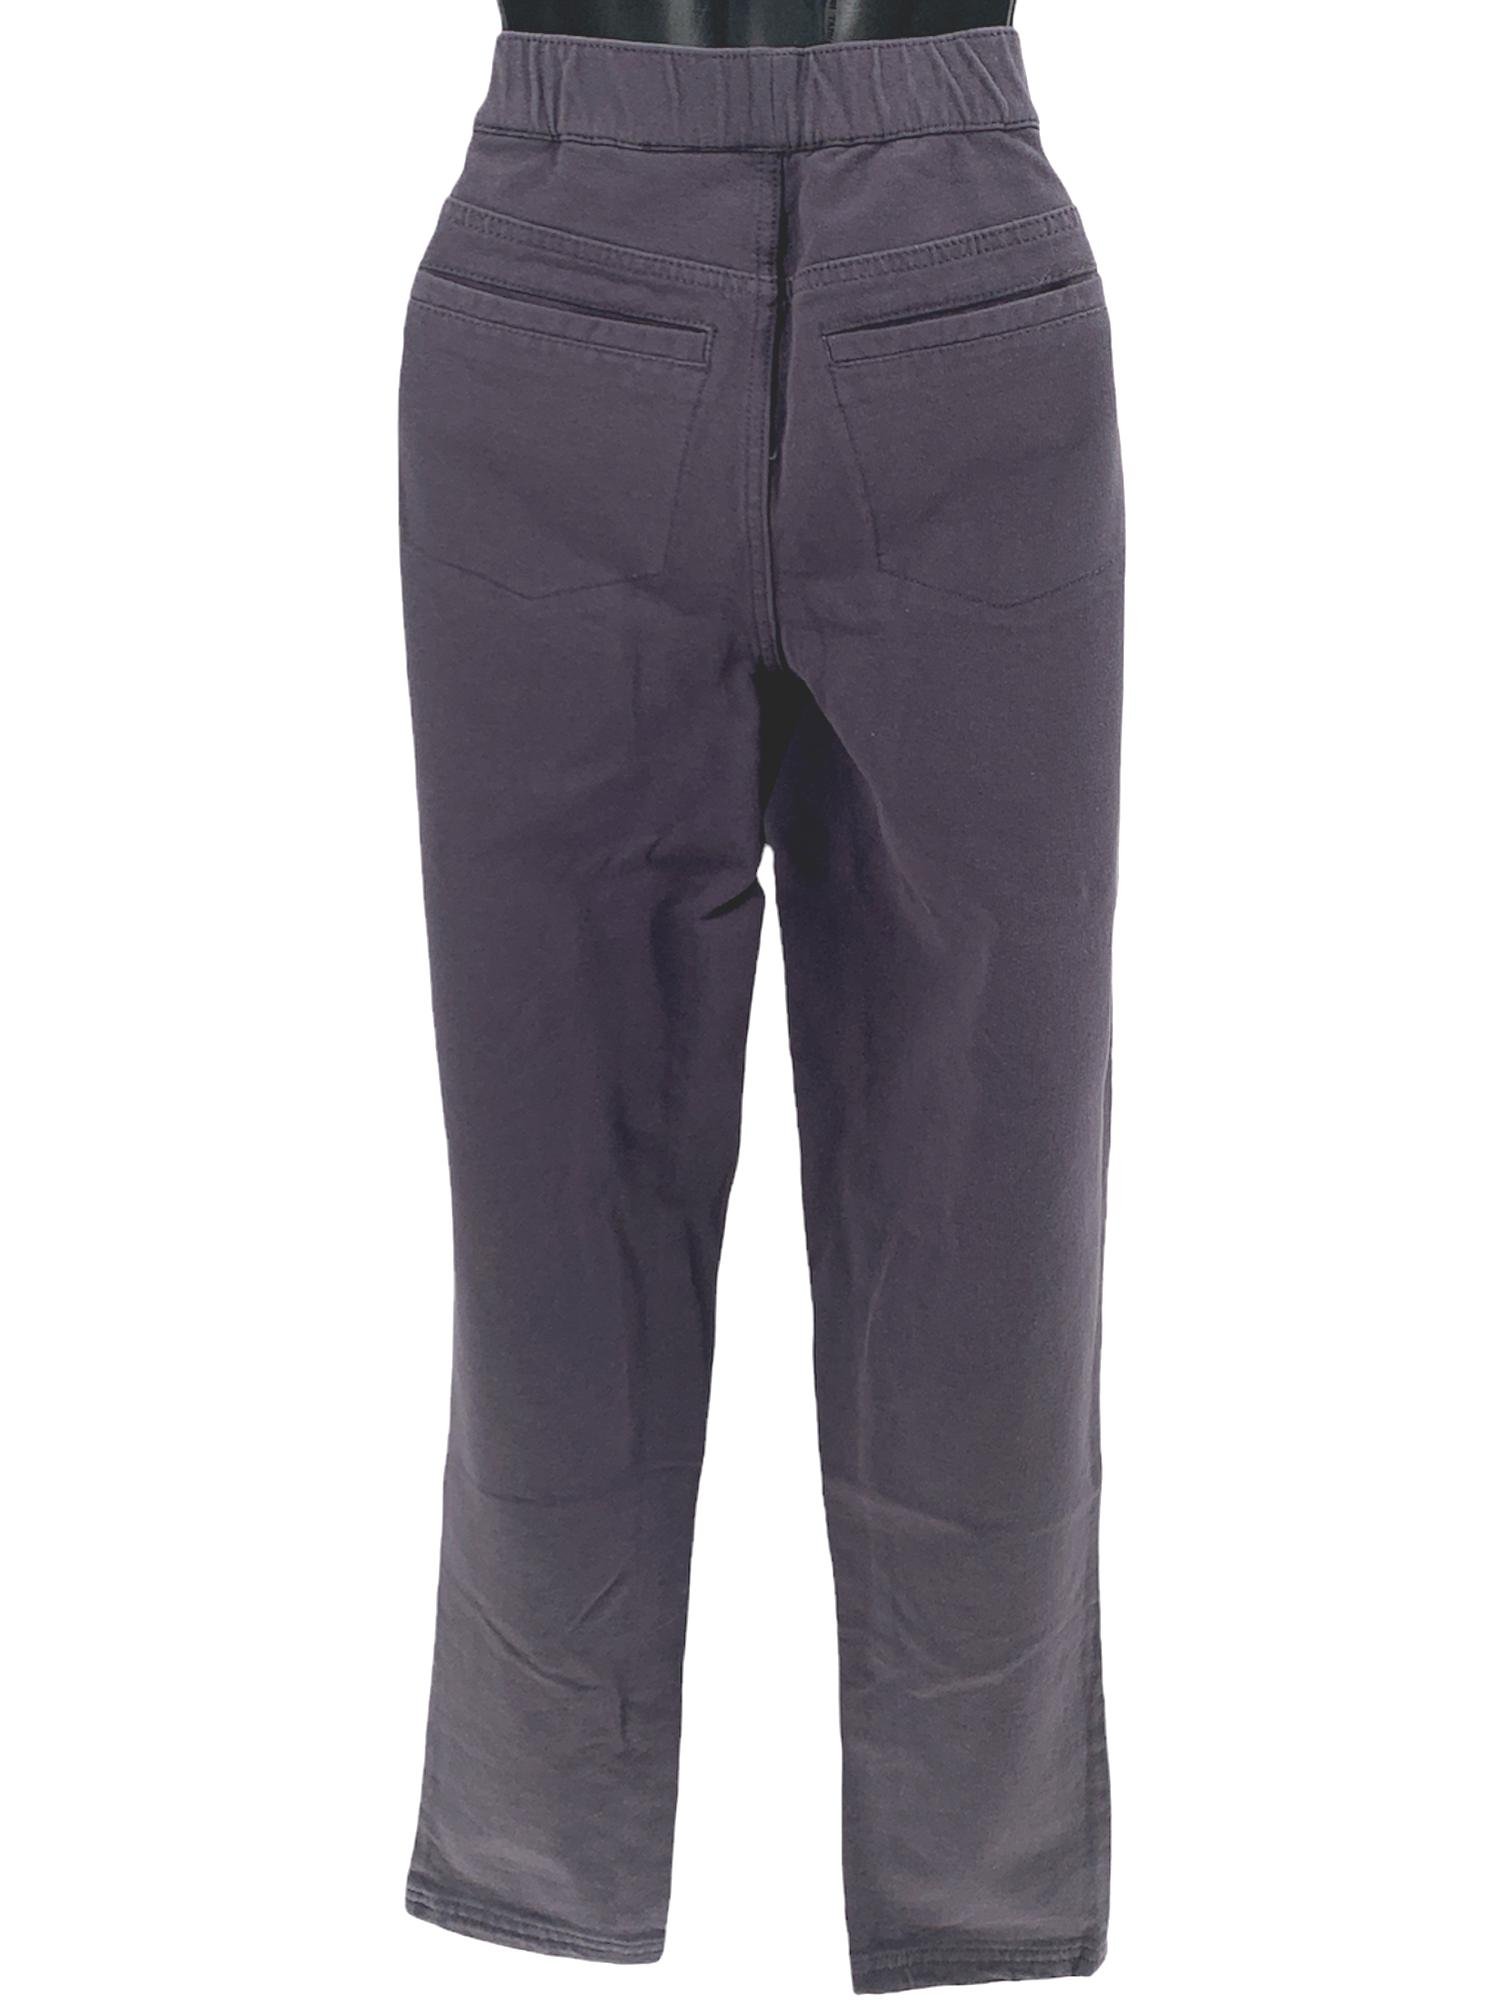 Denim & Co. Comfy Knit Denim Slim Leg 5-Pocket Ankle Jeans Gray